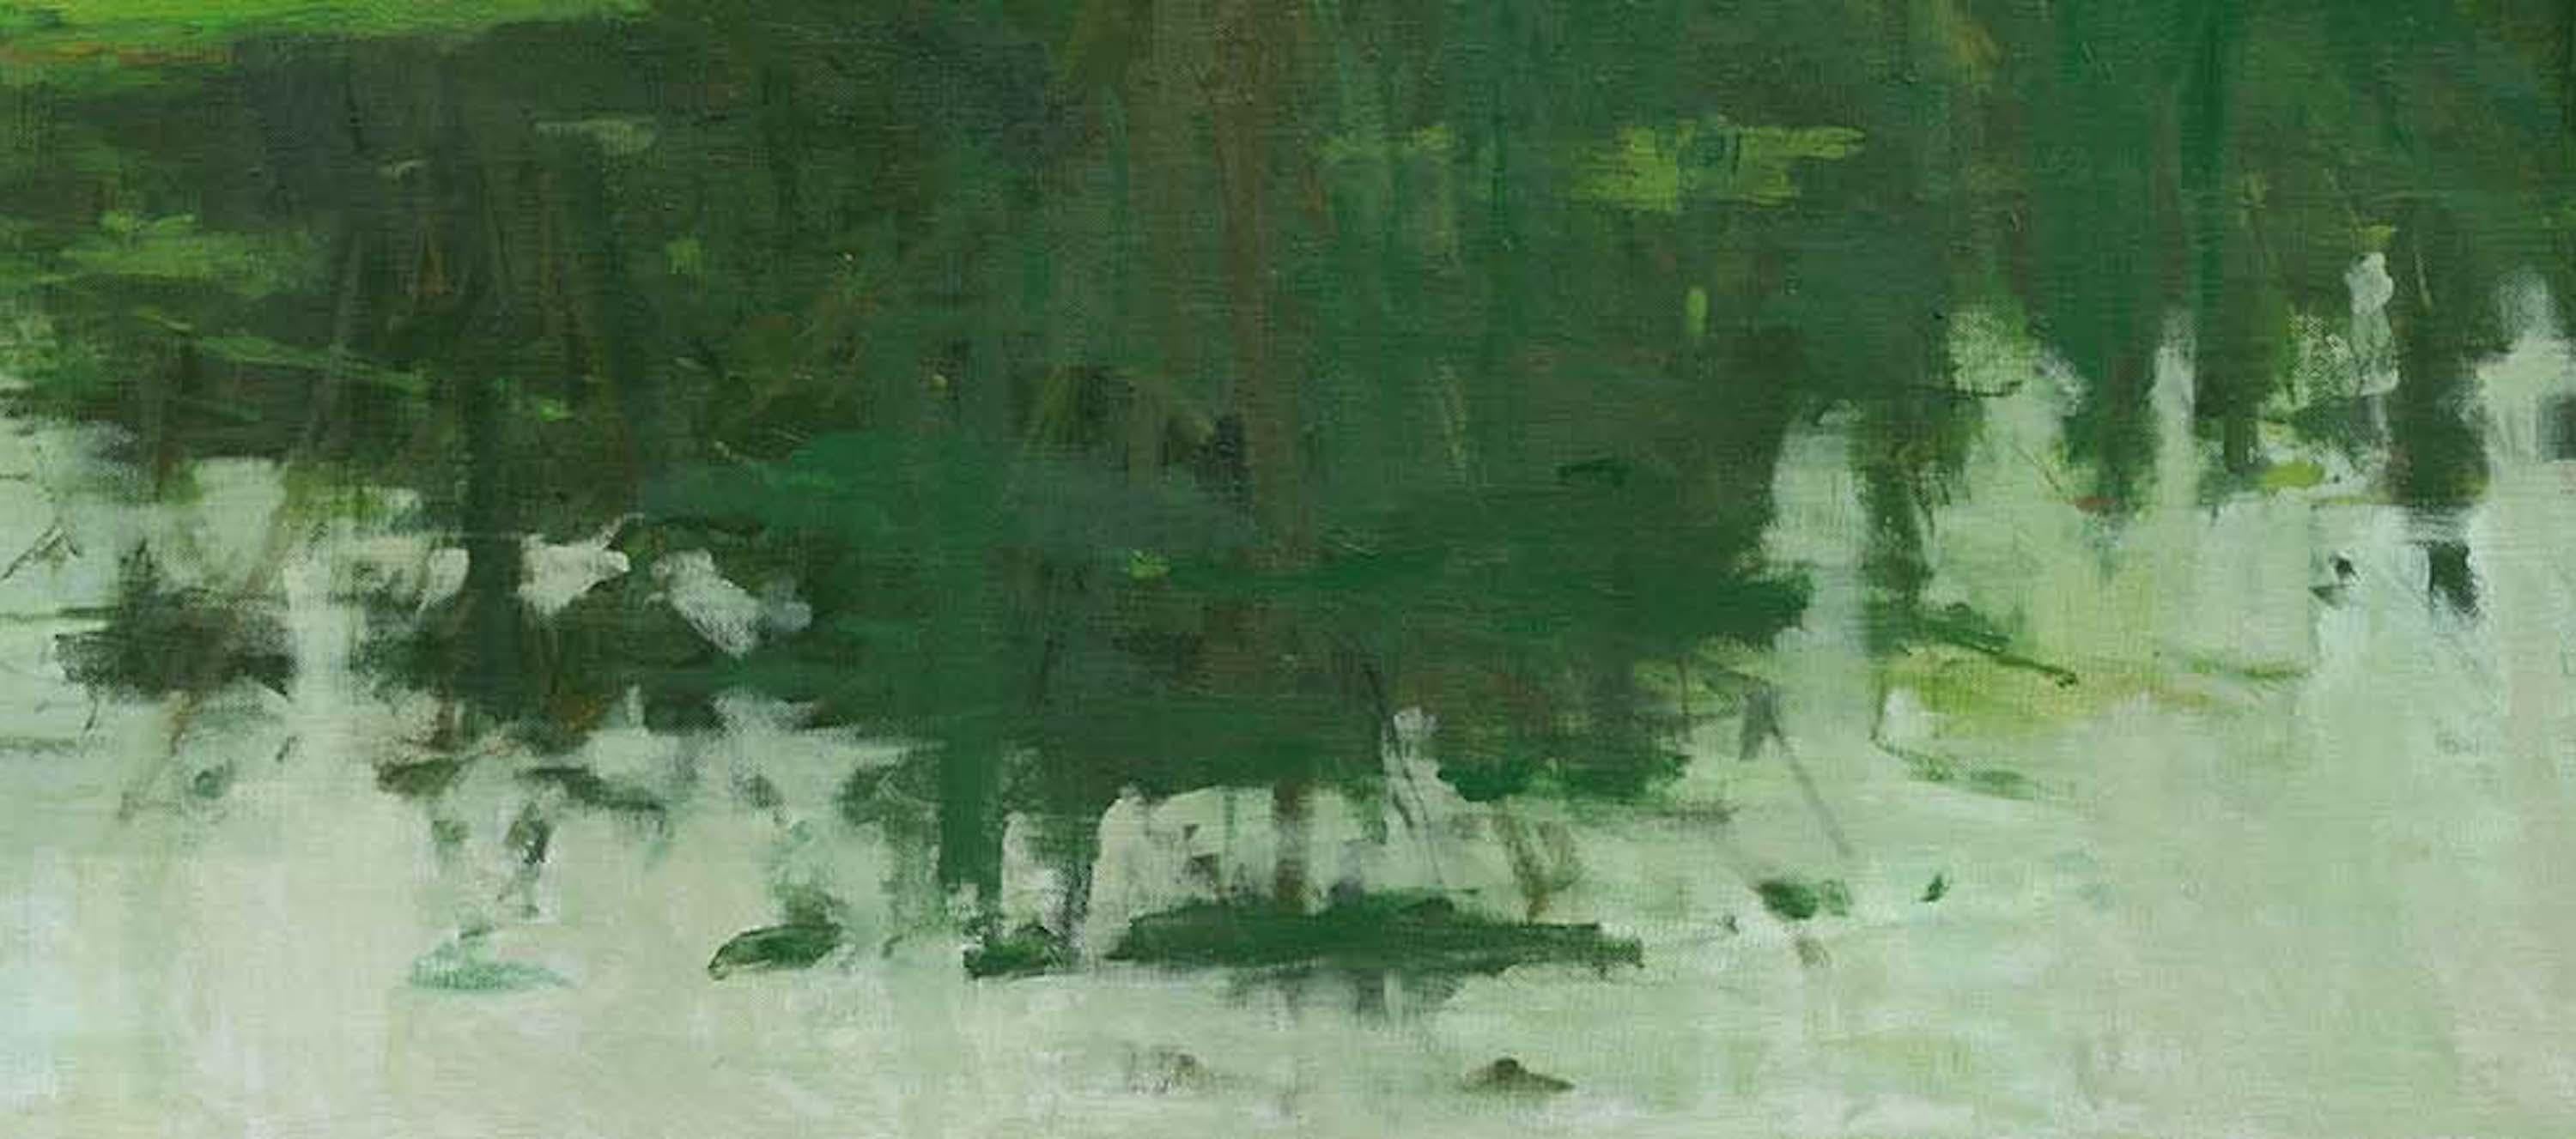 Reflection No. 5 by Calo Carratalá - Landscape painting, green Amazon rainforest For Sale 3